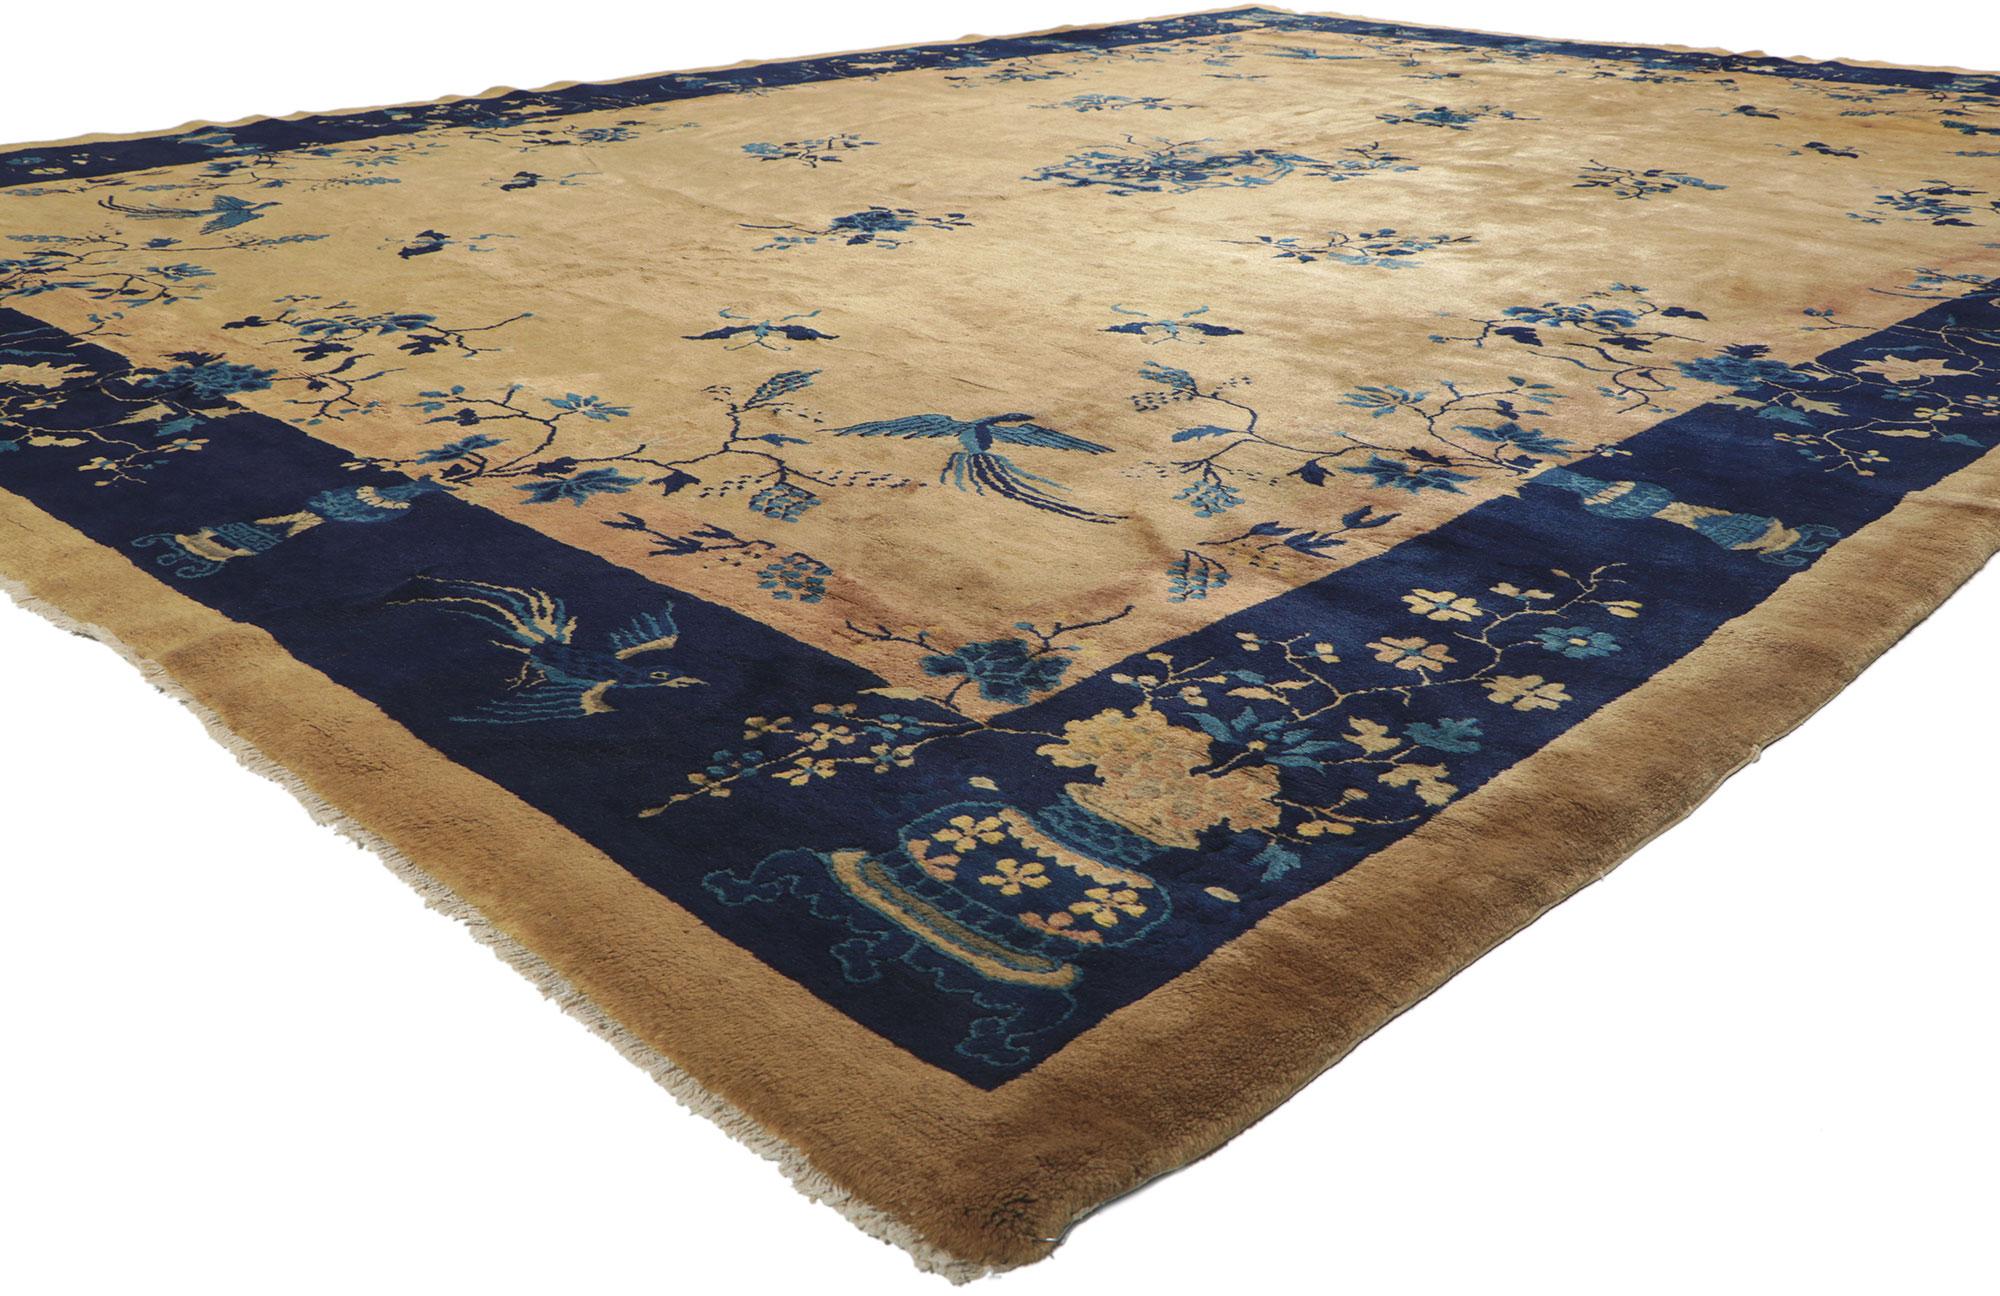 72180 Fin du 19e siècle, ancien tapis chinois de Pékin de style Chinoiserie 11'00 x 14'05. Ce magnifique tapis ancien de Pékin présente un motif complexe mais traditionnel qui s'étend sur cette composition à la fois somptueuse et majestueuse. Un